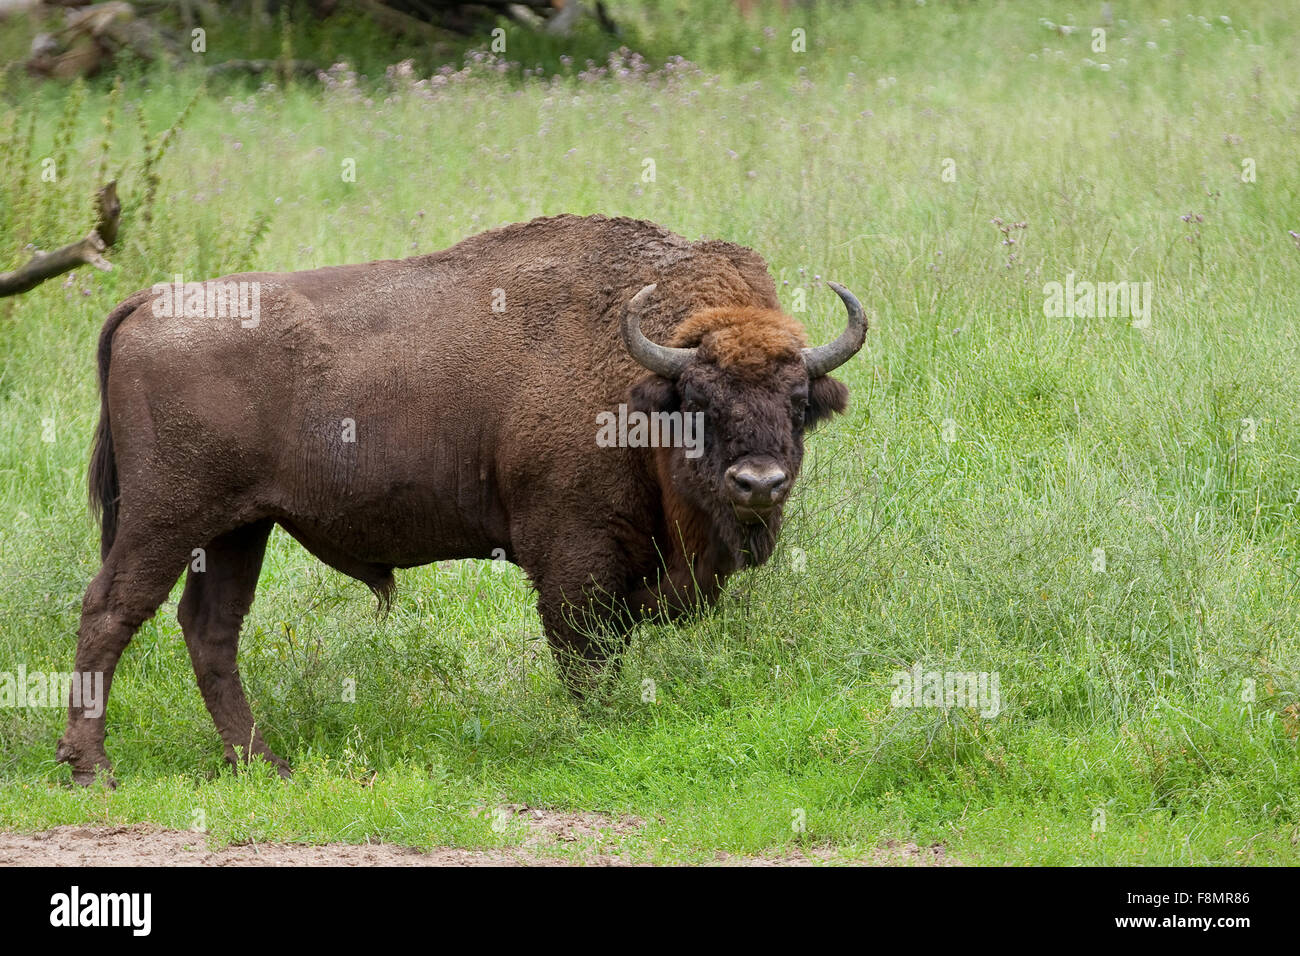 El bisonte europeo, wisent, madera europea, macho, bisontes, Männchen Wisent, Bulle, Europäisches Bison bison bonasus, Wildrind, Foto de stock